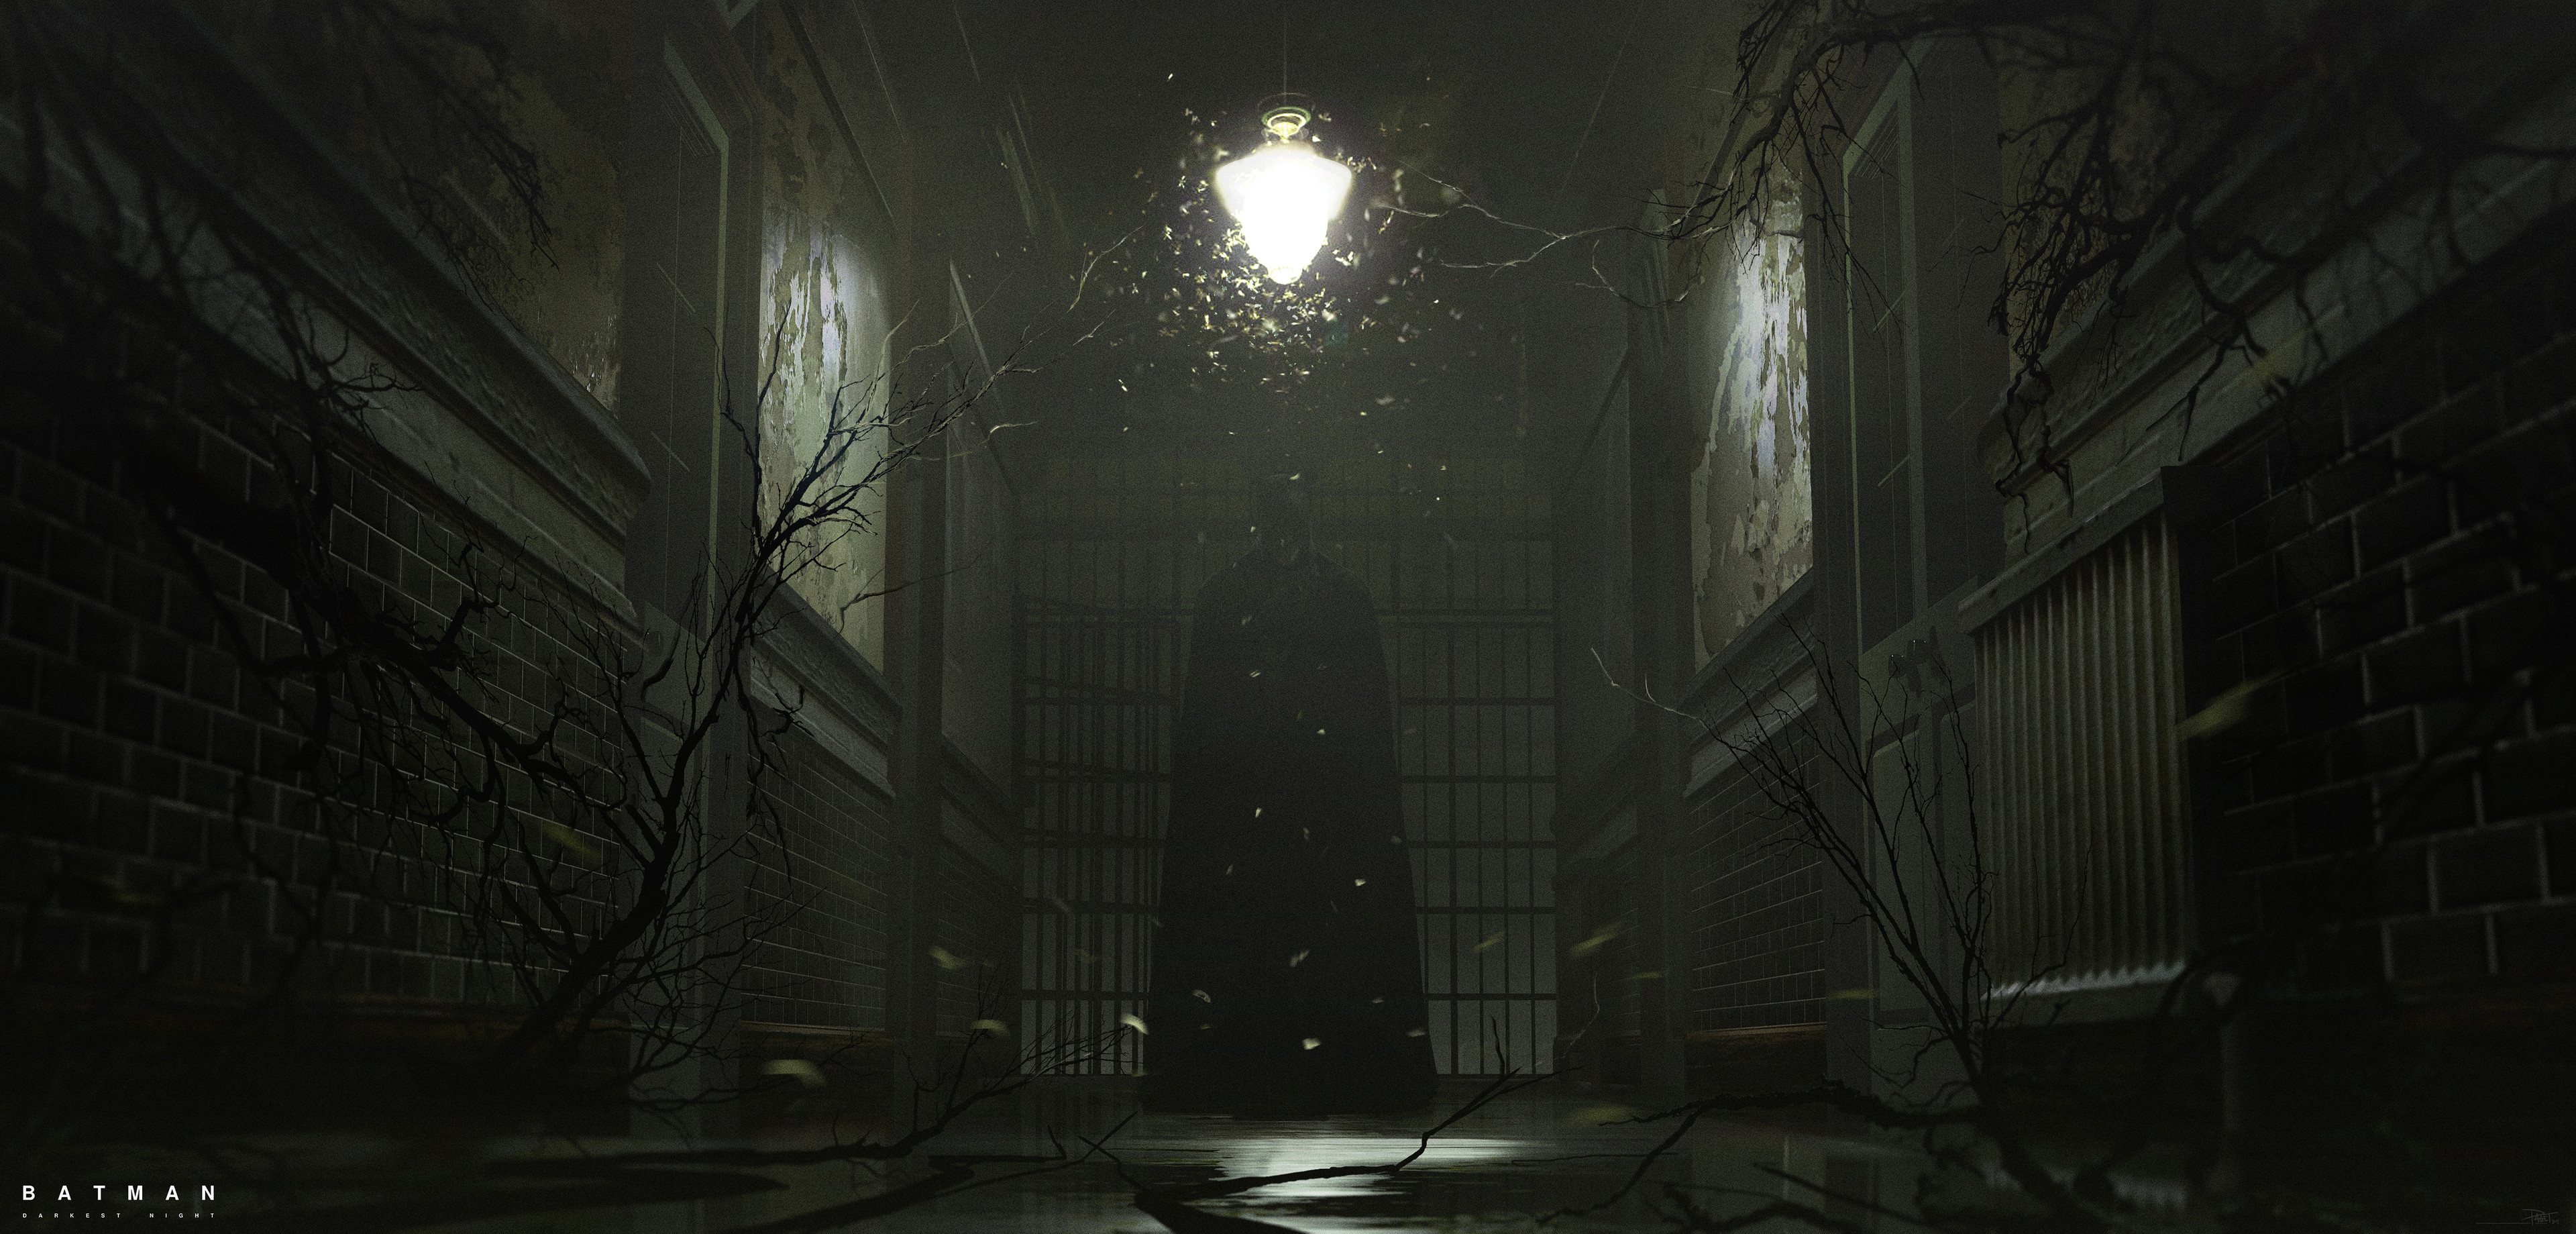 David Paget - Batman: Darkest Night - Arkham Interior Concept